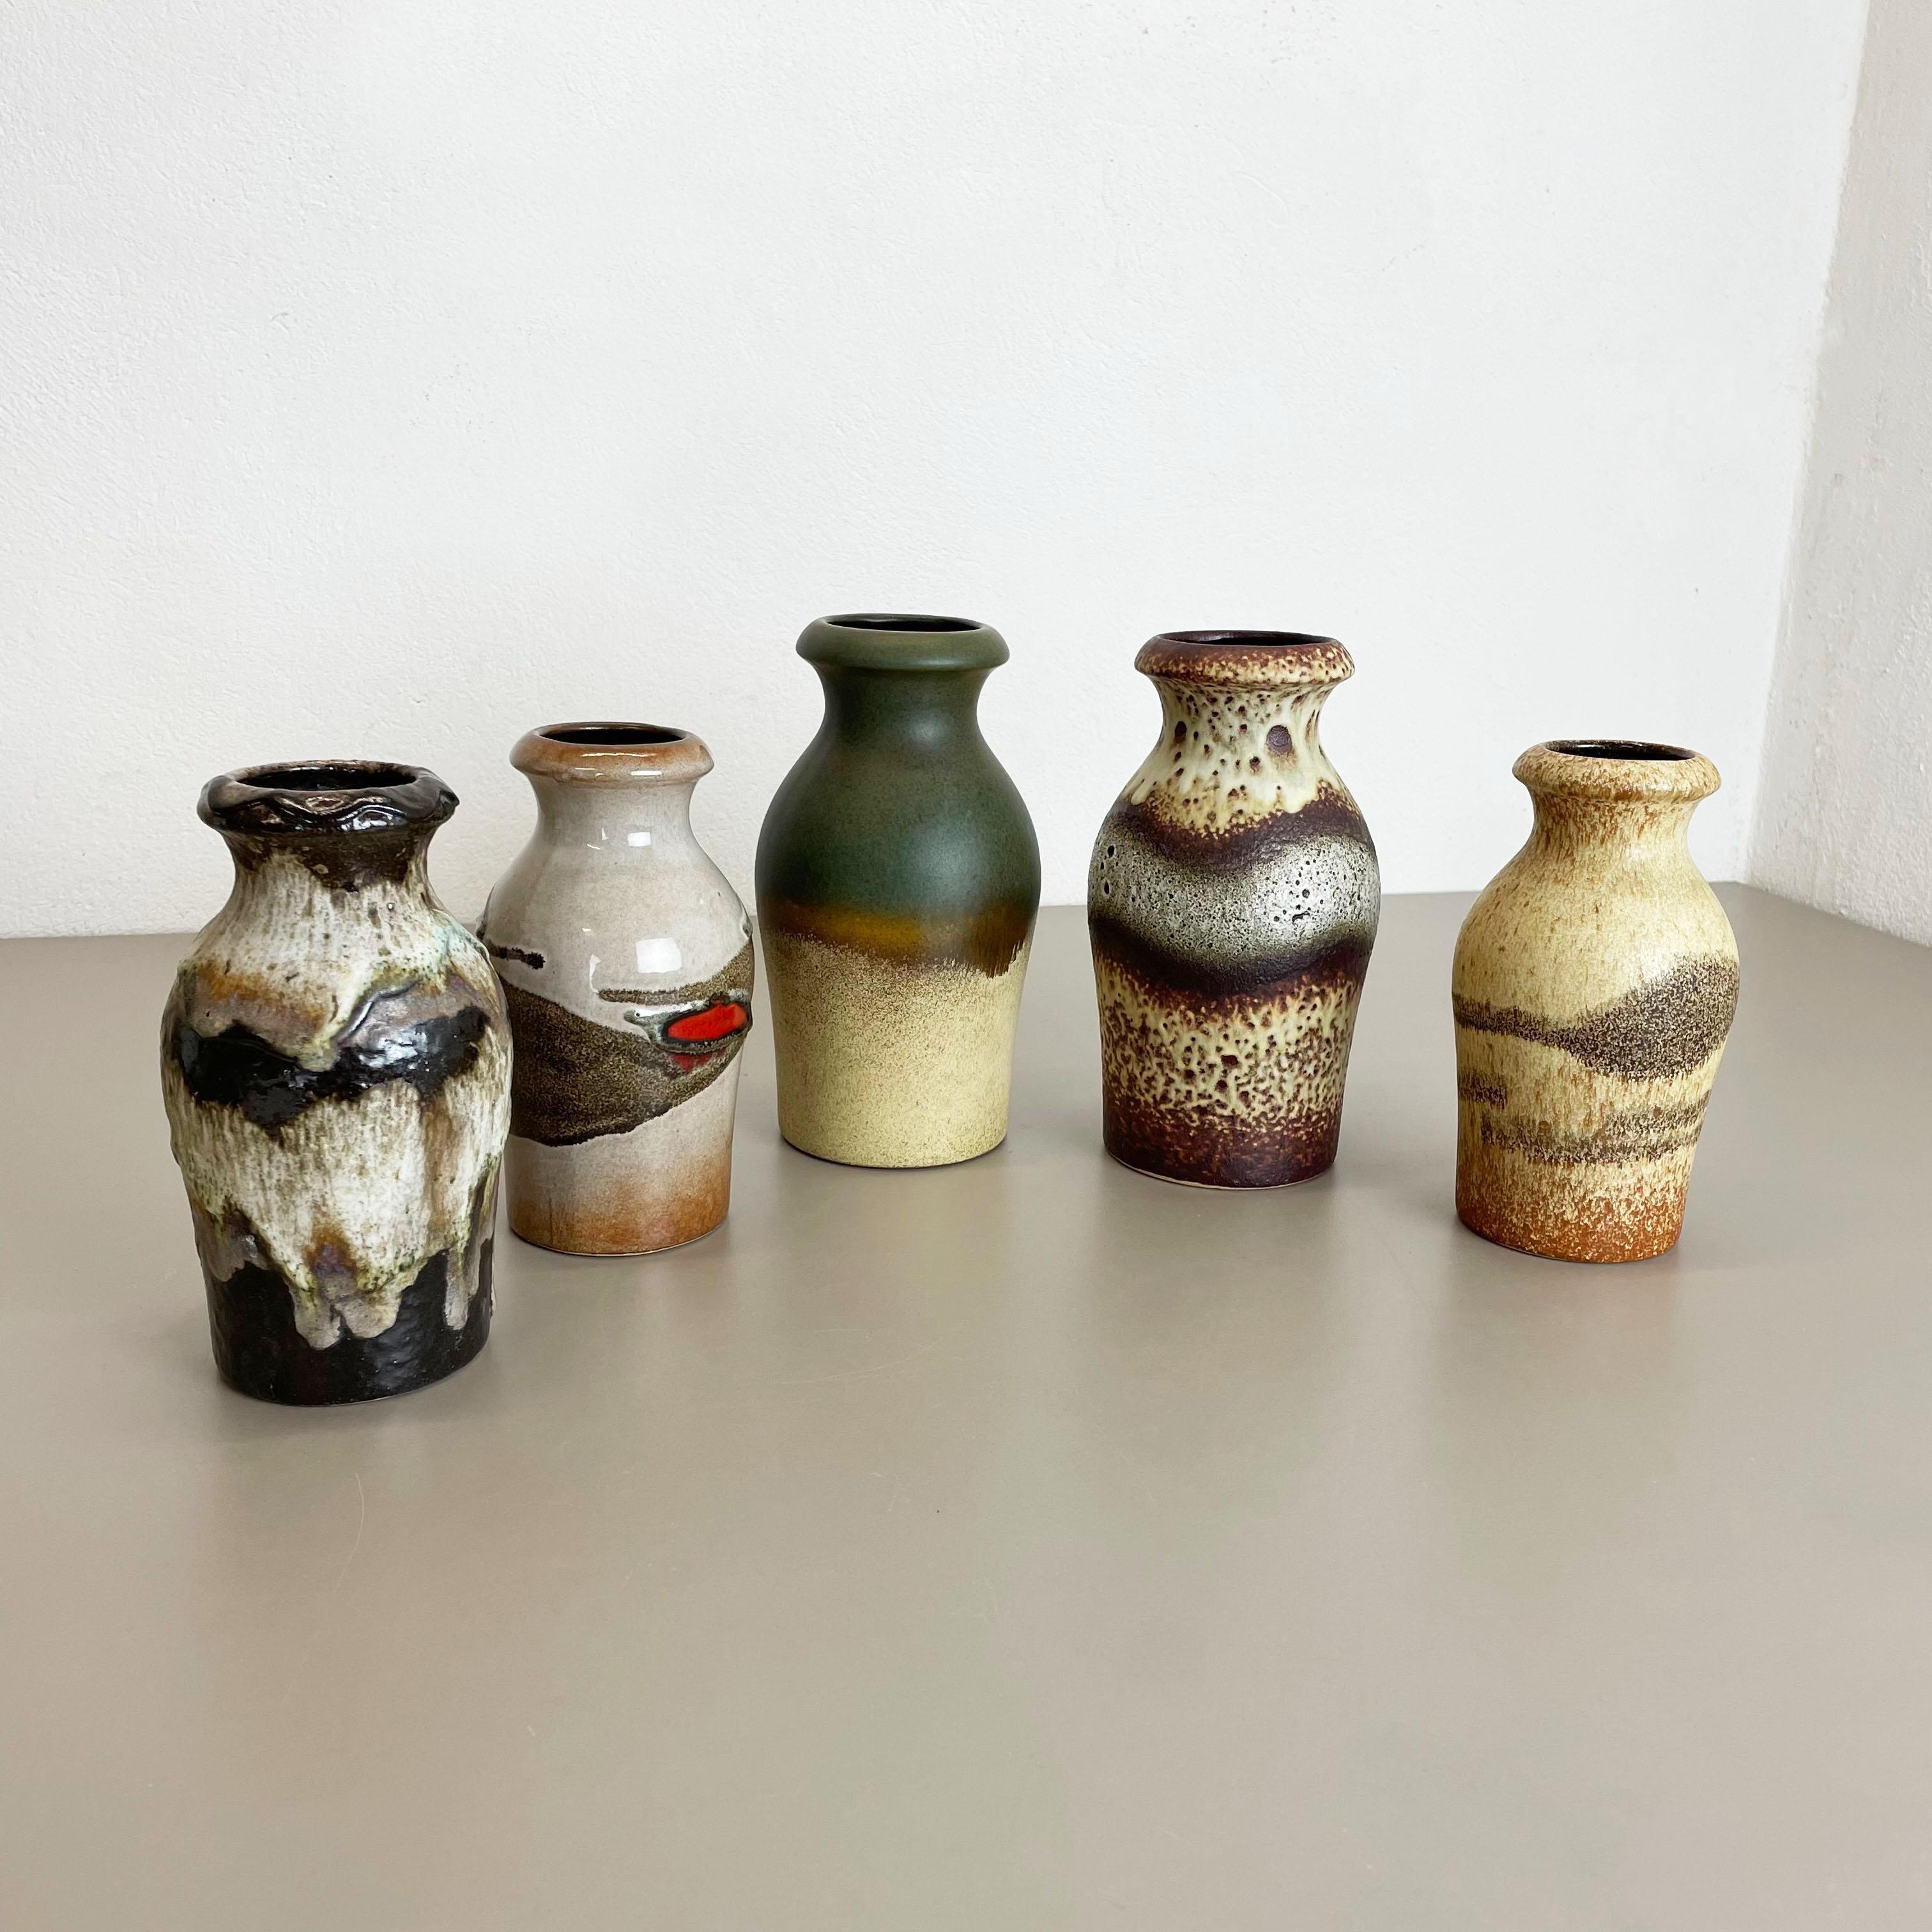 Artikel:

Satz von fünf fetten Lavakunstvasen


Produzent:

Scheurich, Deutschland


Entwurf:

Nr. 208-21
Nr. 523-18



Jahrzehnt:

1970s


Dieses originelle Vintage-Vasen-Set wurde in den 1970er Jahren in Deutschland